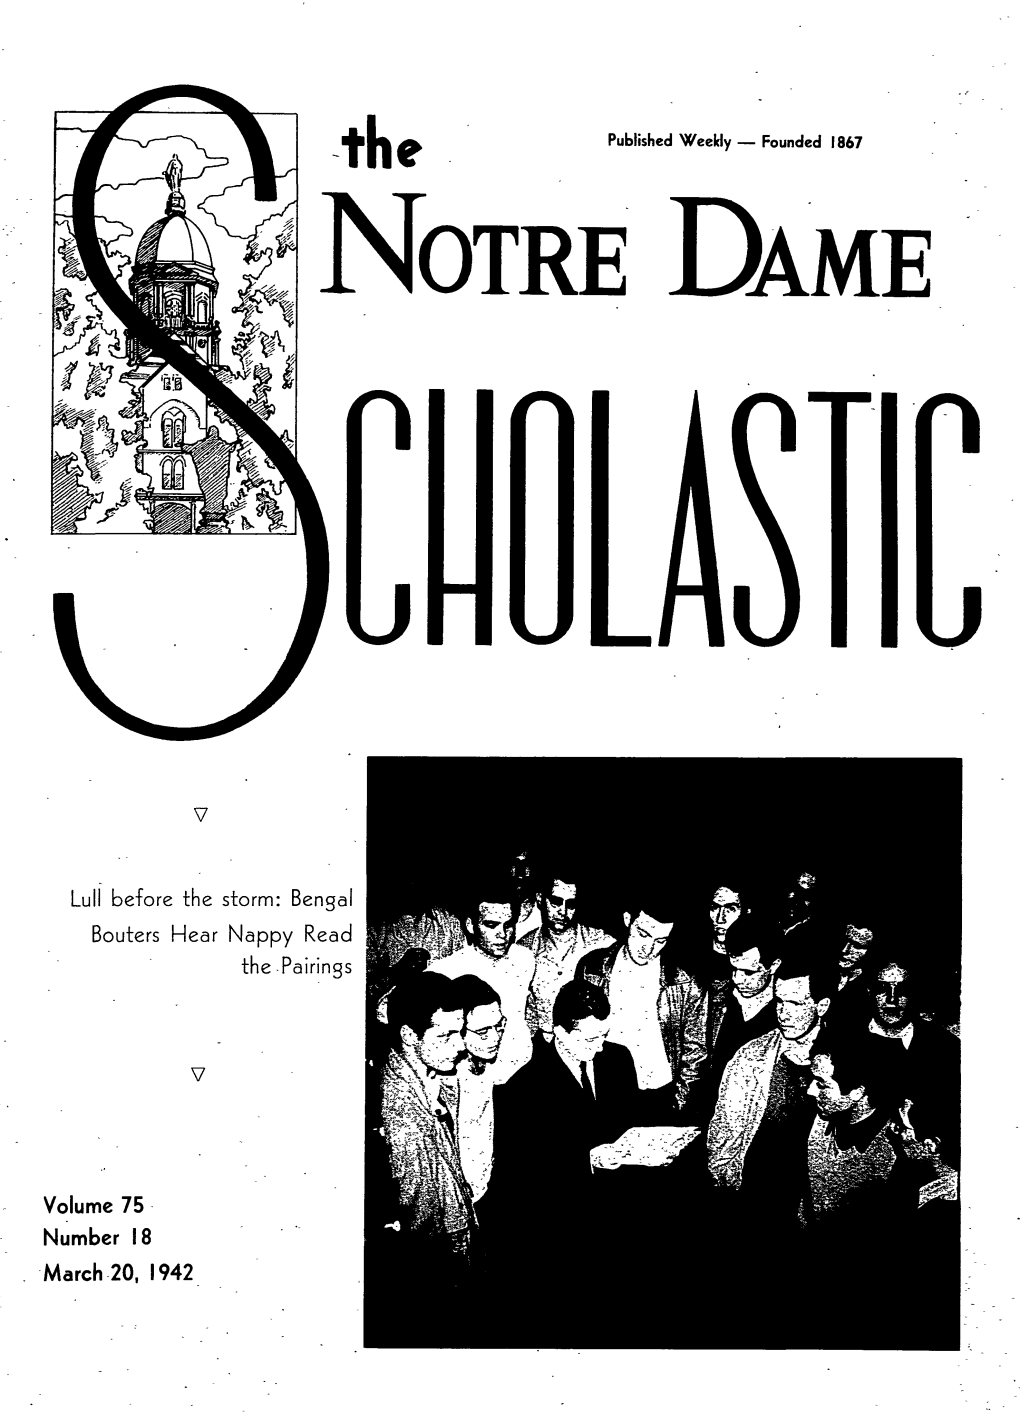 Notre Dame Scholastic, Vol. 75, No. 18